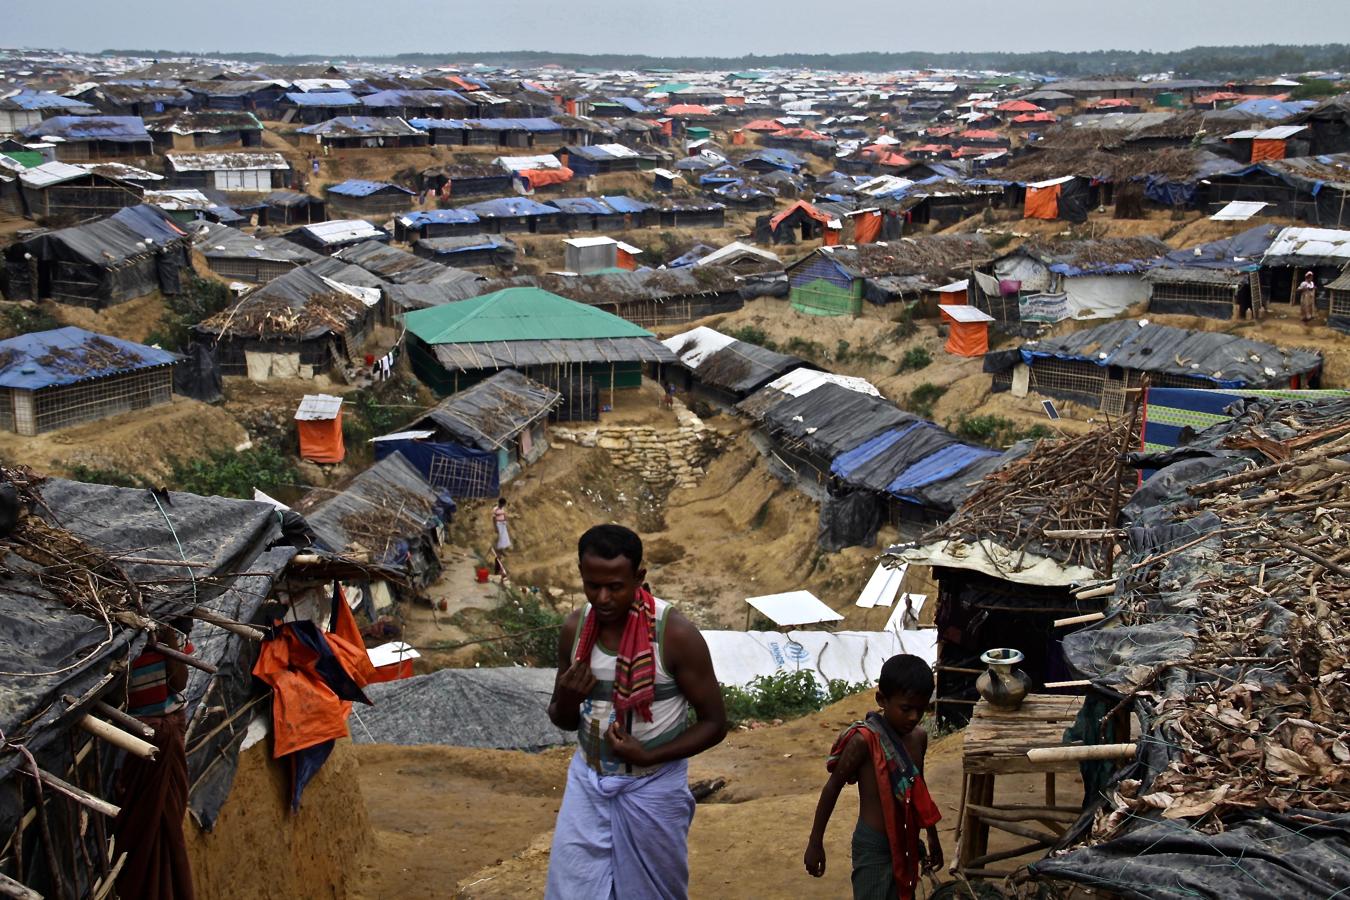 Hacinados en chozas de bambú entre el barro, los refugiados rohingyas que han huido de Birmania viven en los campamentos que han proliferado al otro de la frontera con Bangladés, como este de Kutupalong. 